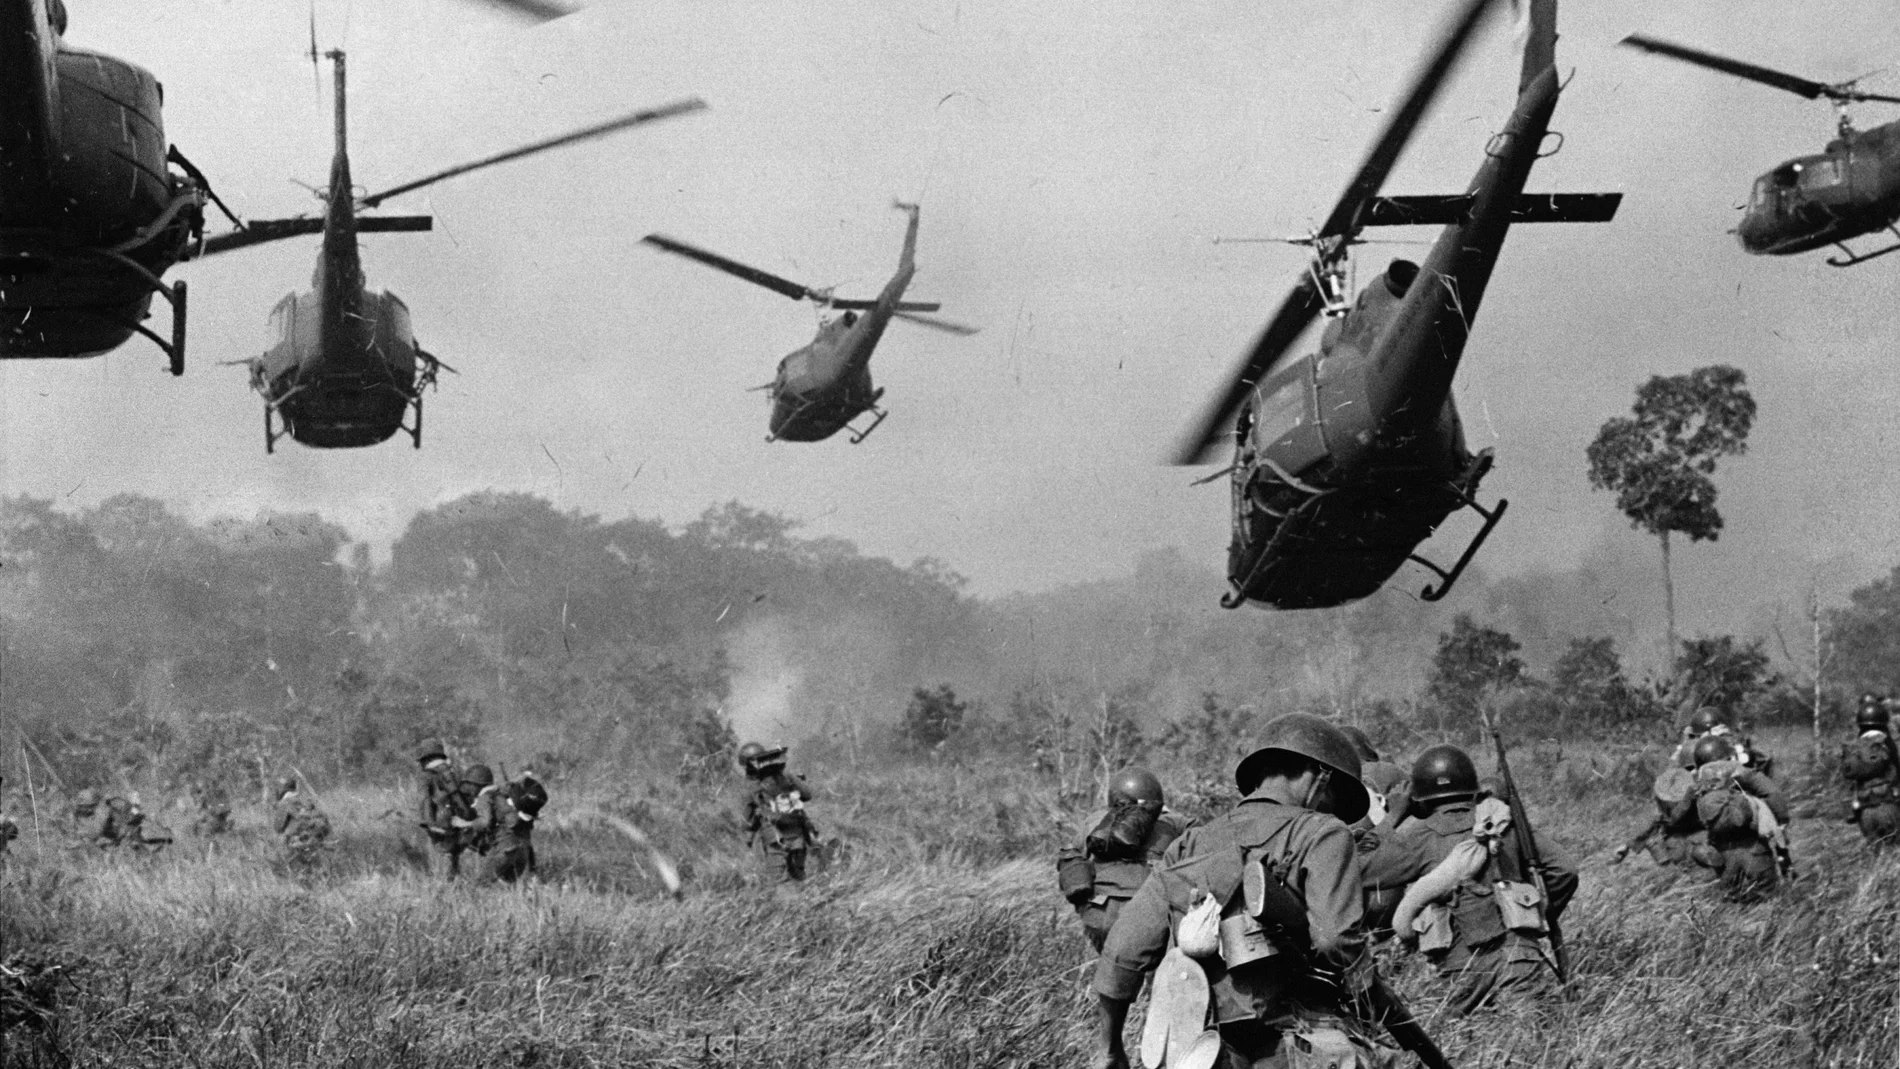 En marzo de 1965, el fotógrafo Horst Faas tomó esta imagen de una ofensiva americana